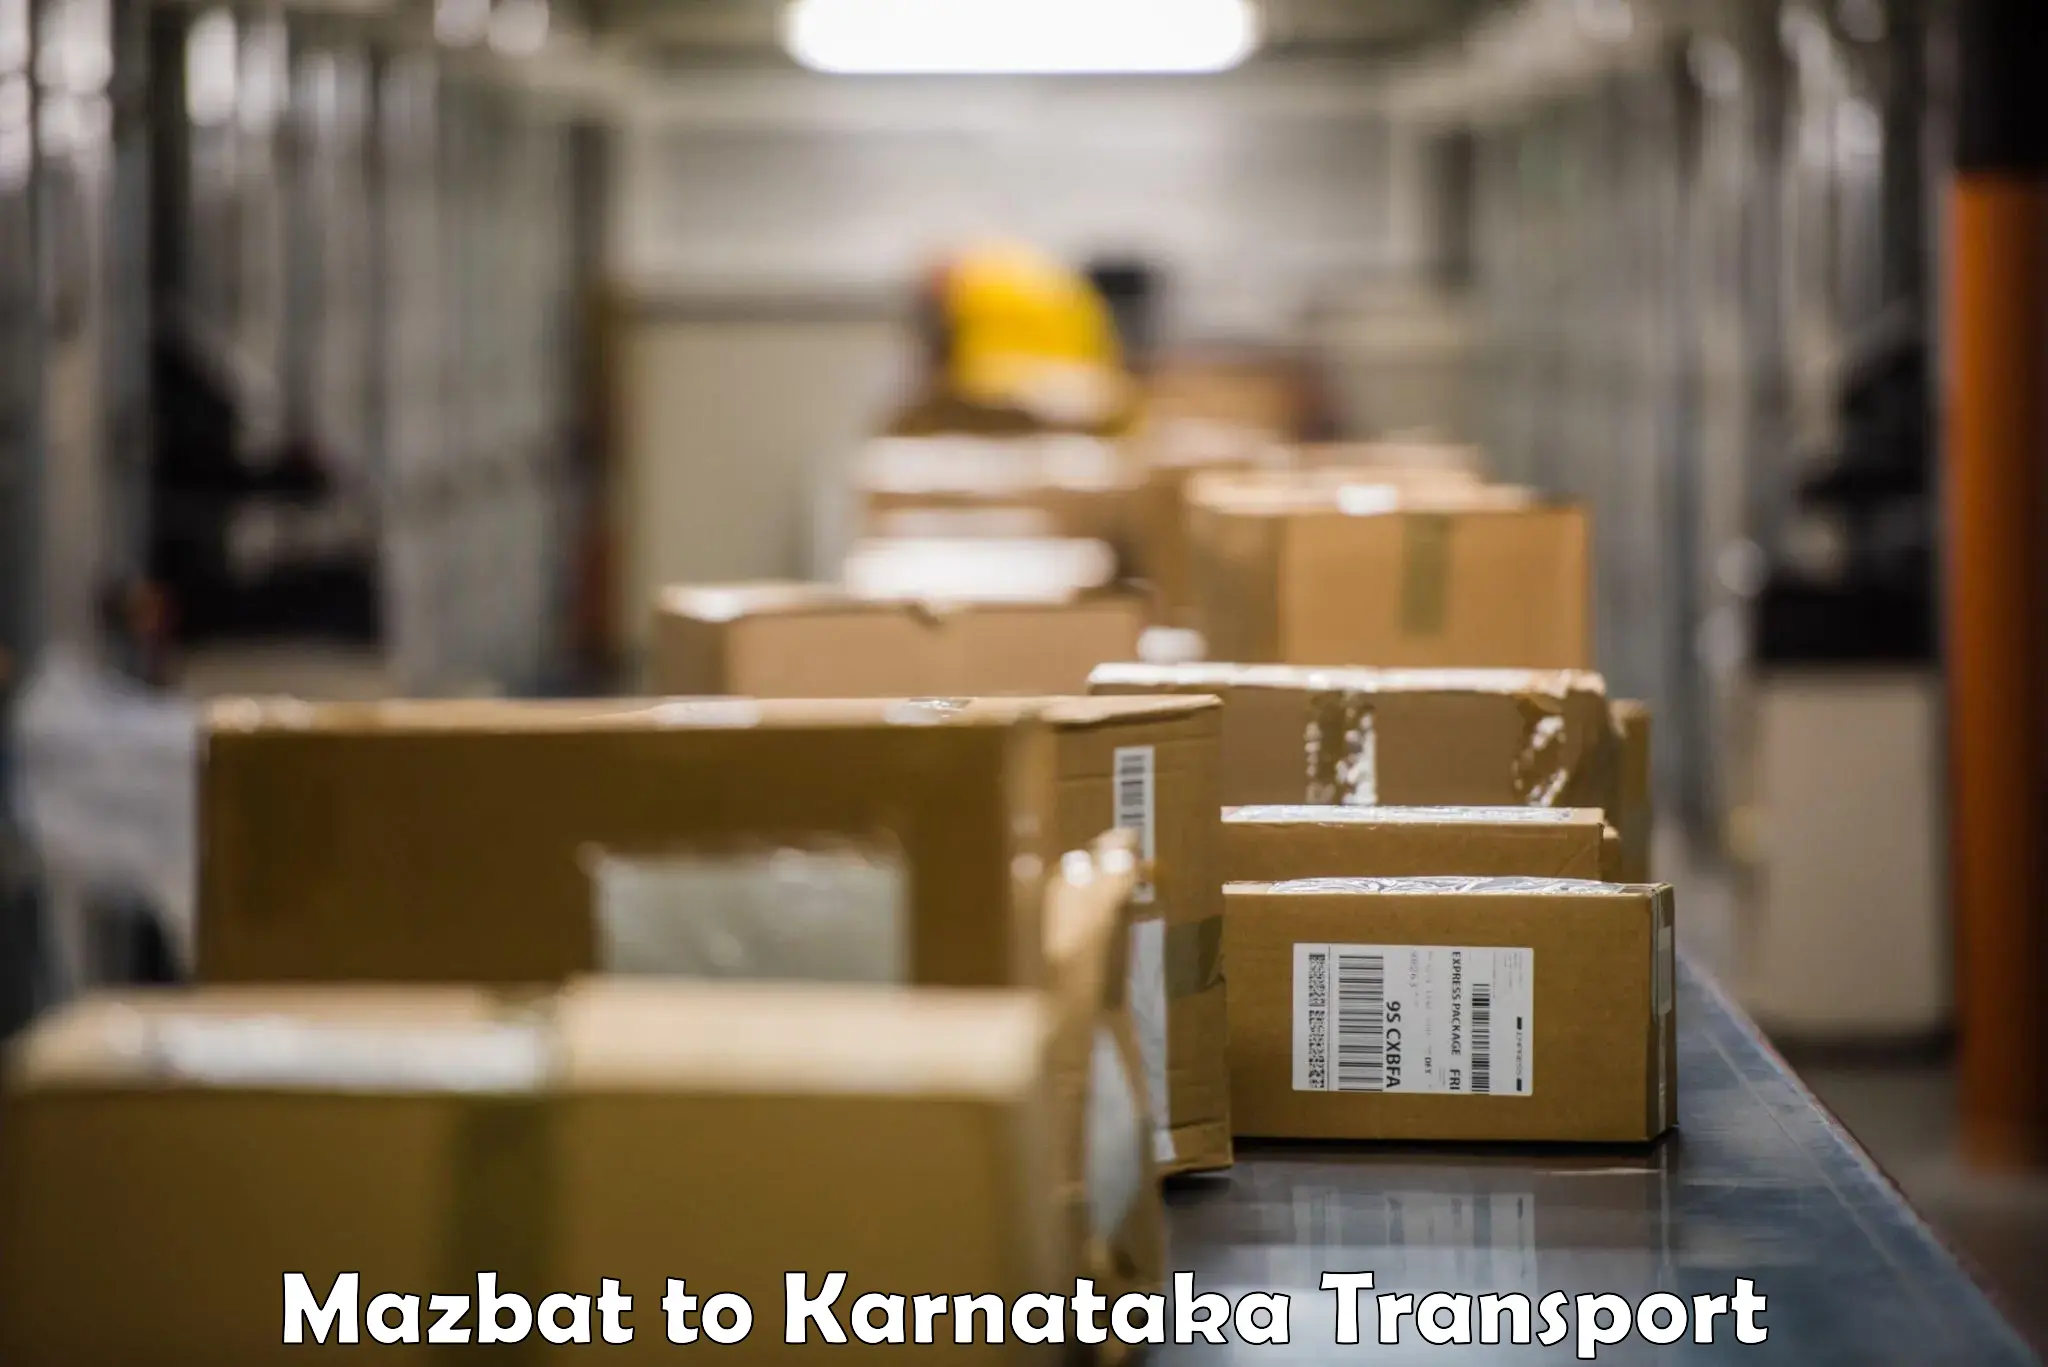 Nearest transport service Mazbat to IIT Dharwad